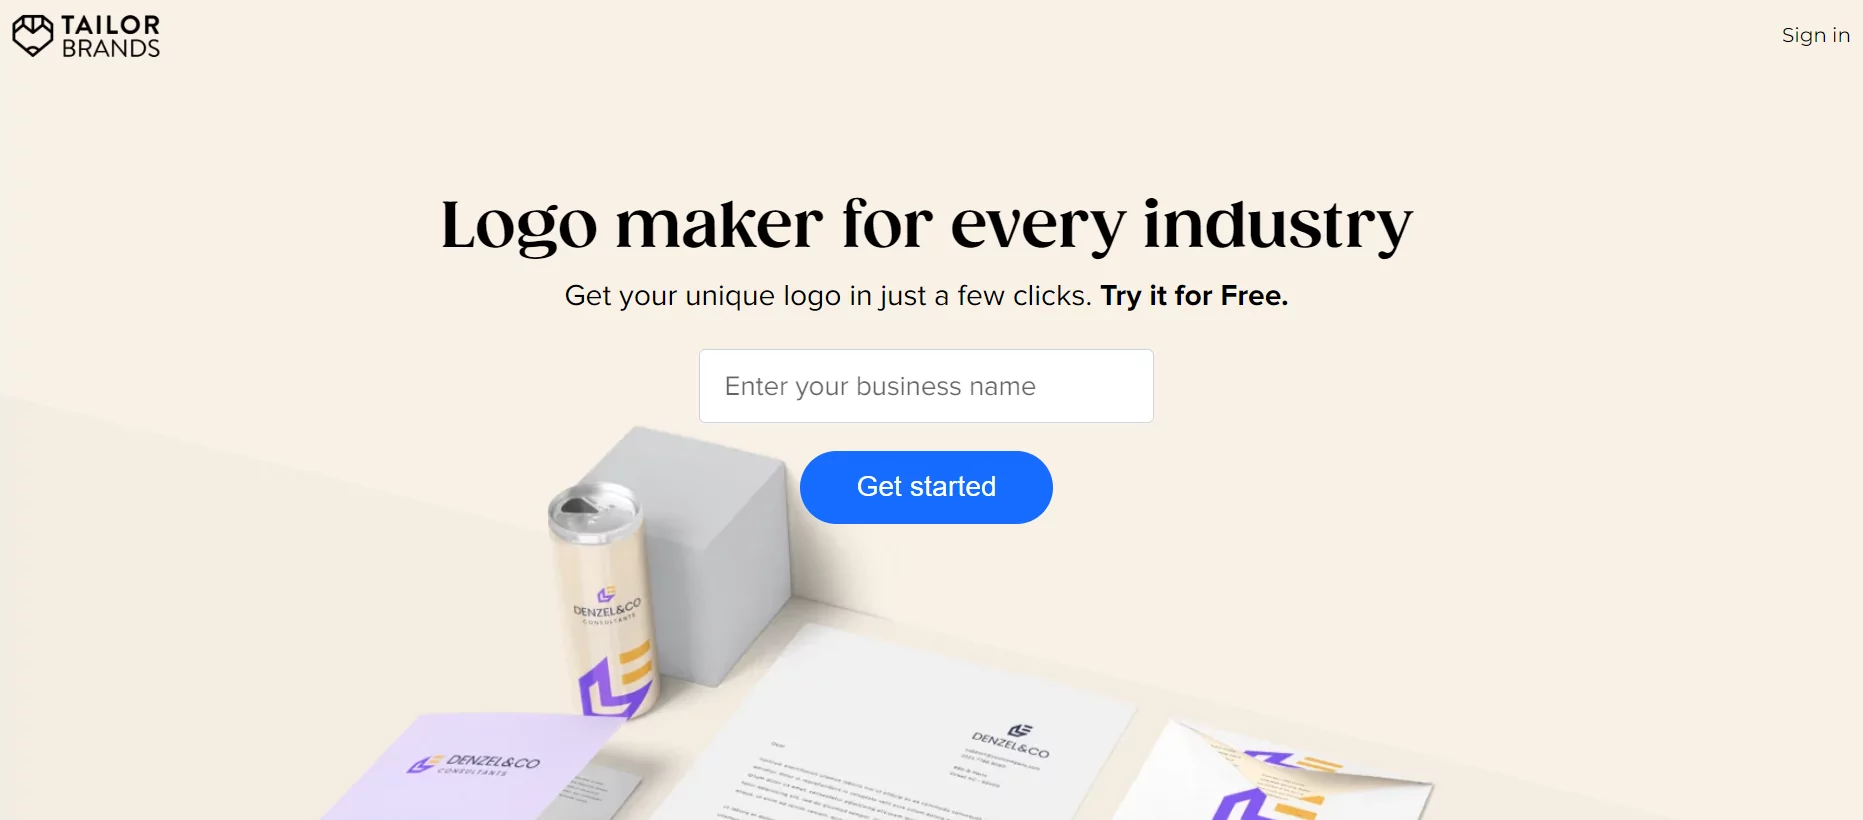 سایت Tailor برای ساخت لوگو